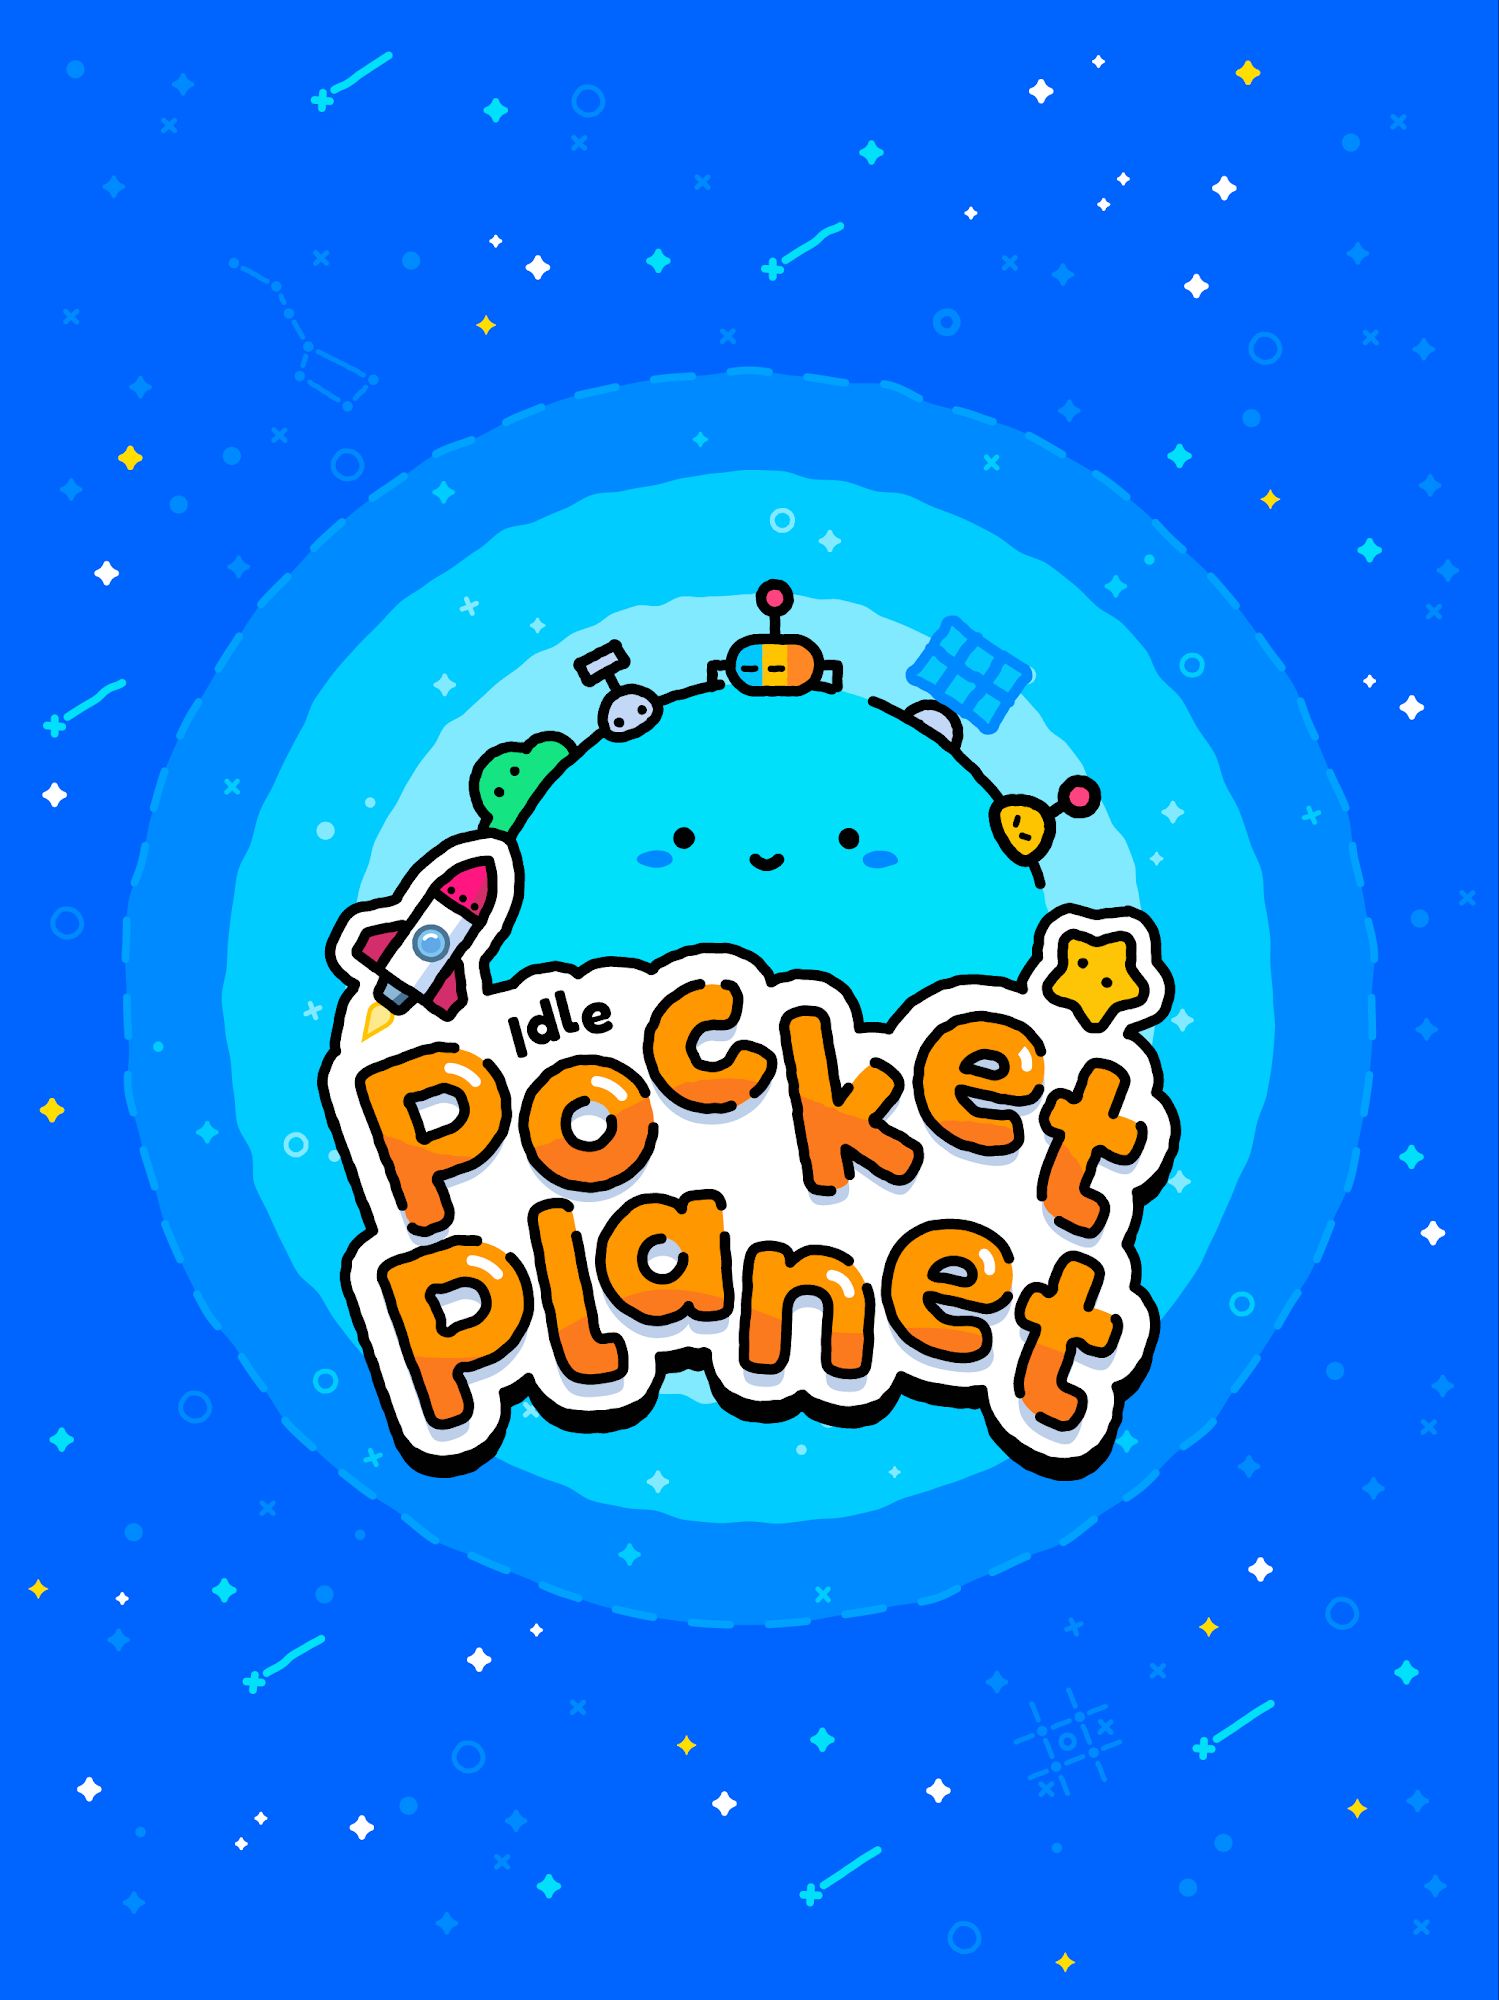 Télécharger Idle Pocket Planet pour Android gratuit.